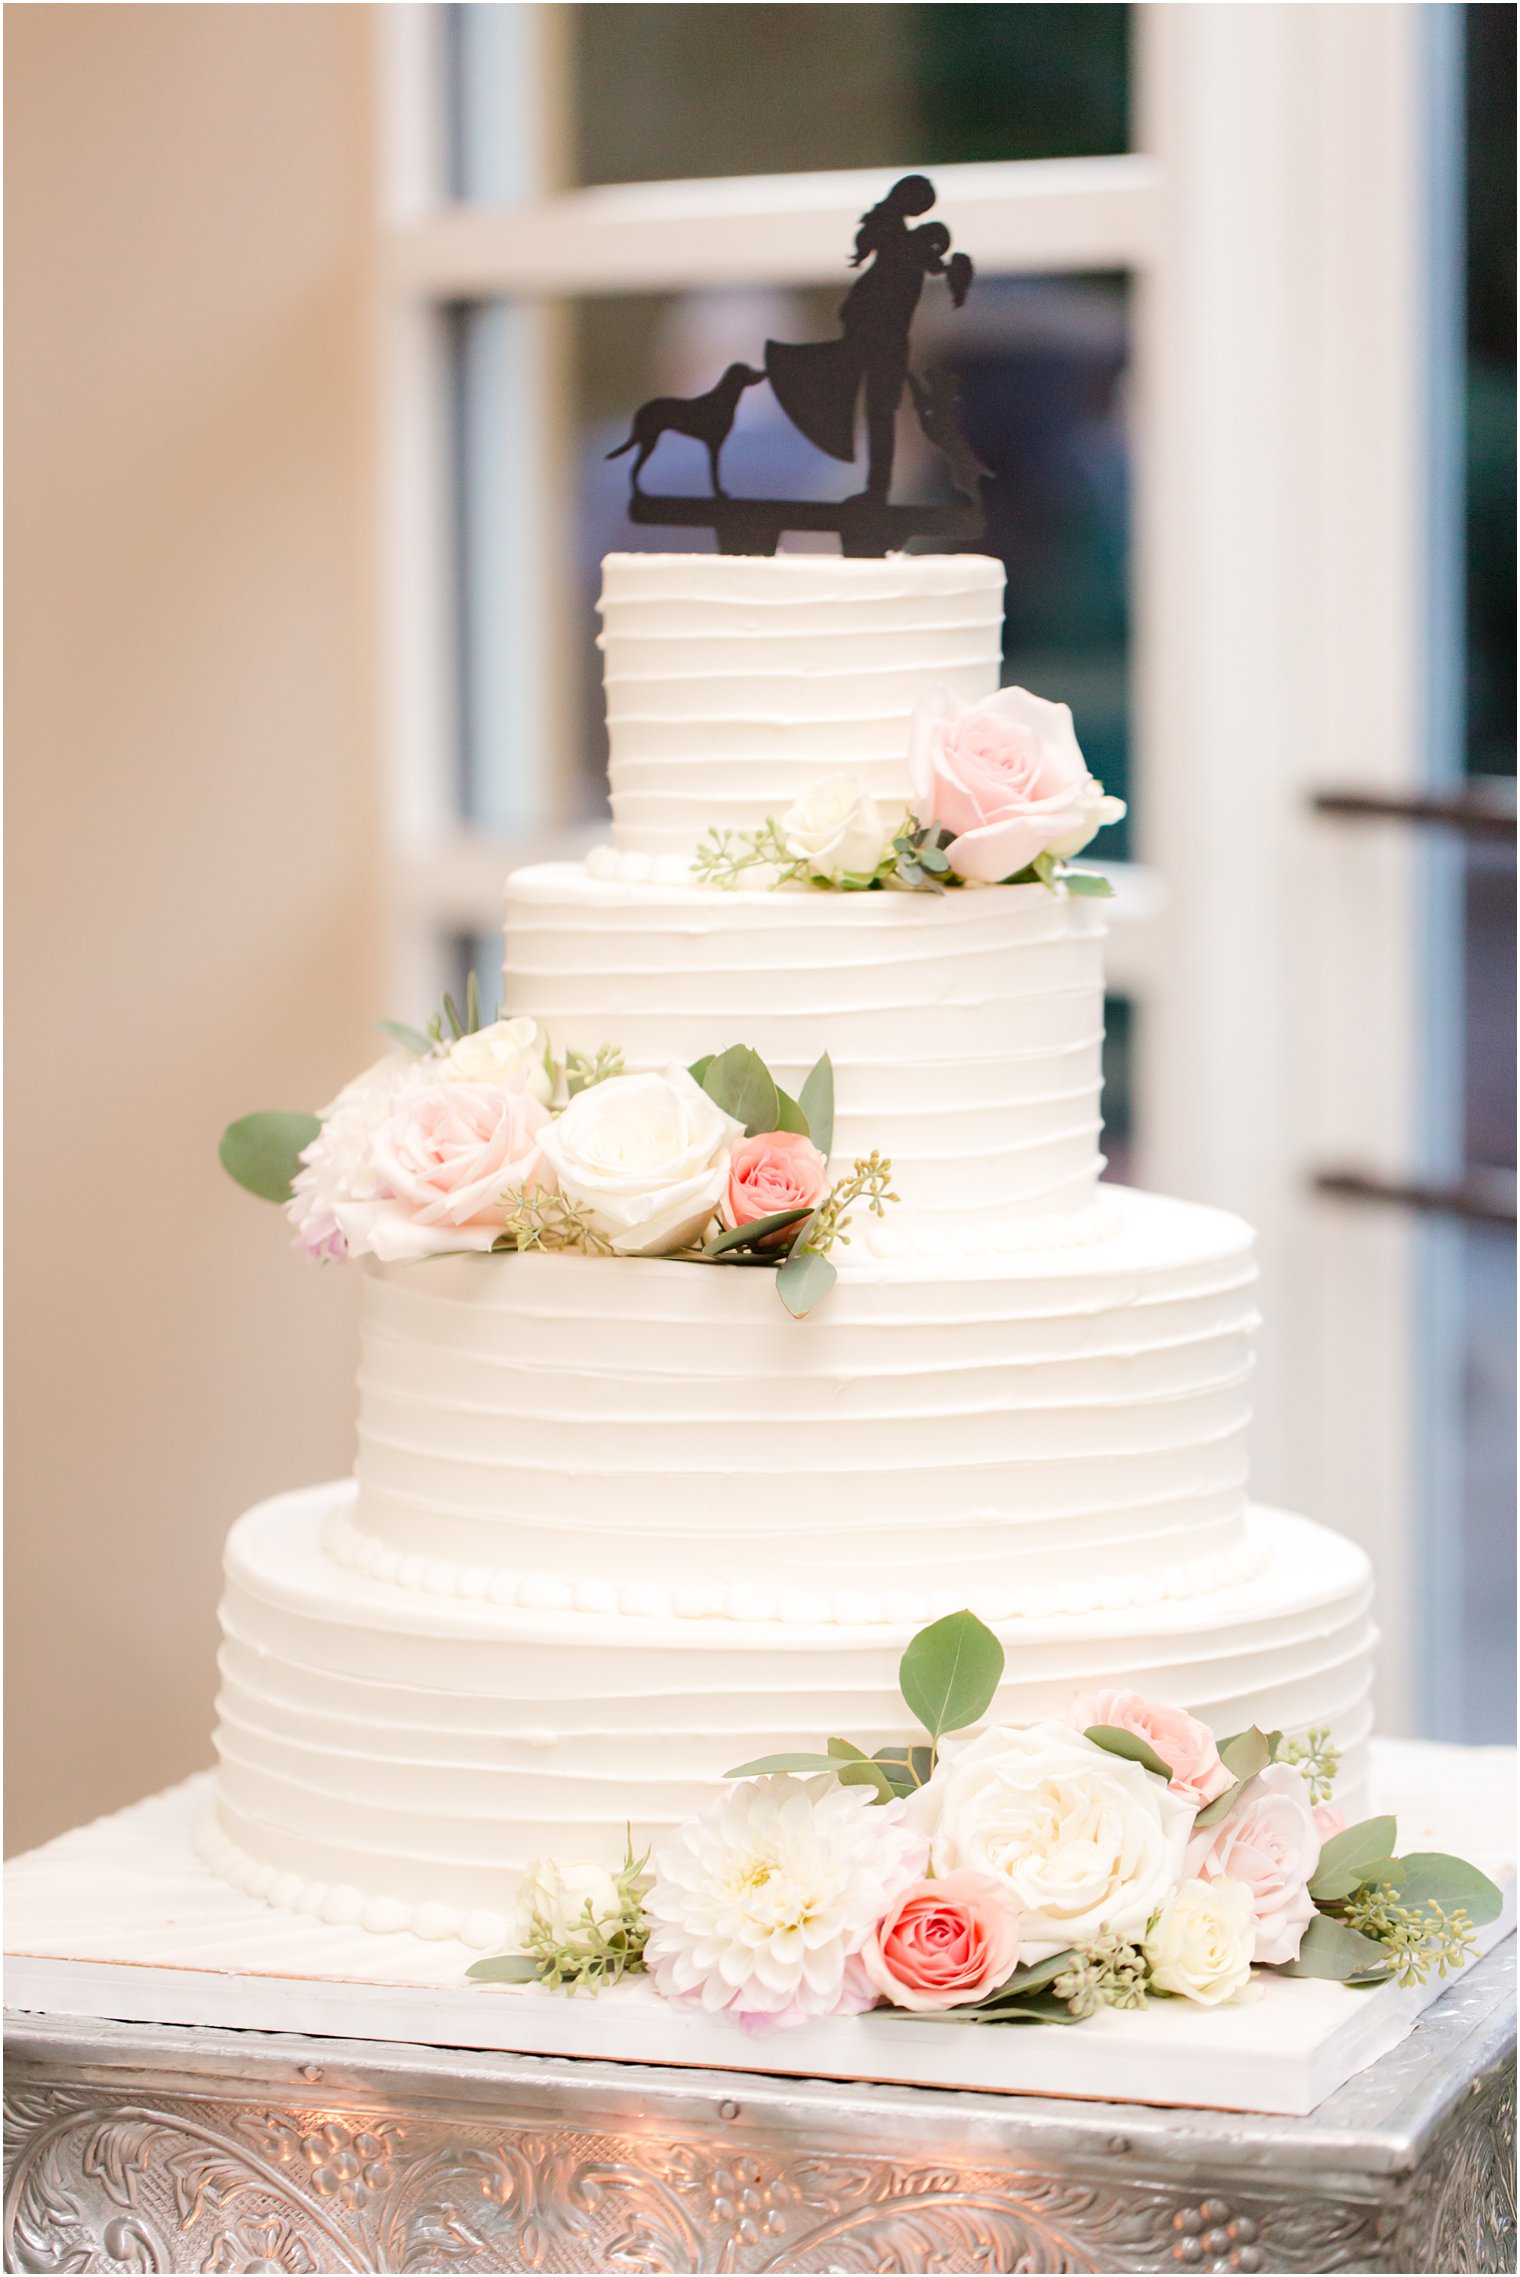 Wedding cake at Stone House at Stirling Ridge Wedding Photos by NJ Wedding Photographers Idalia Photography